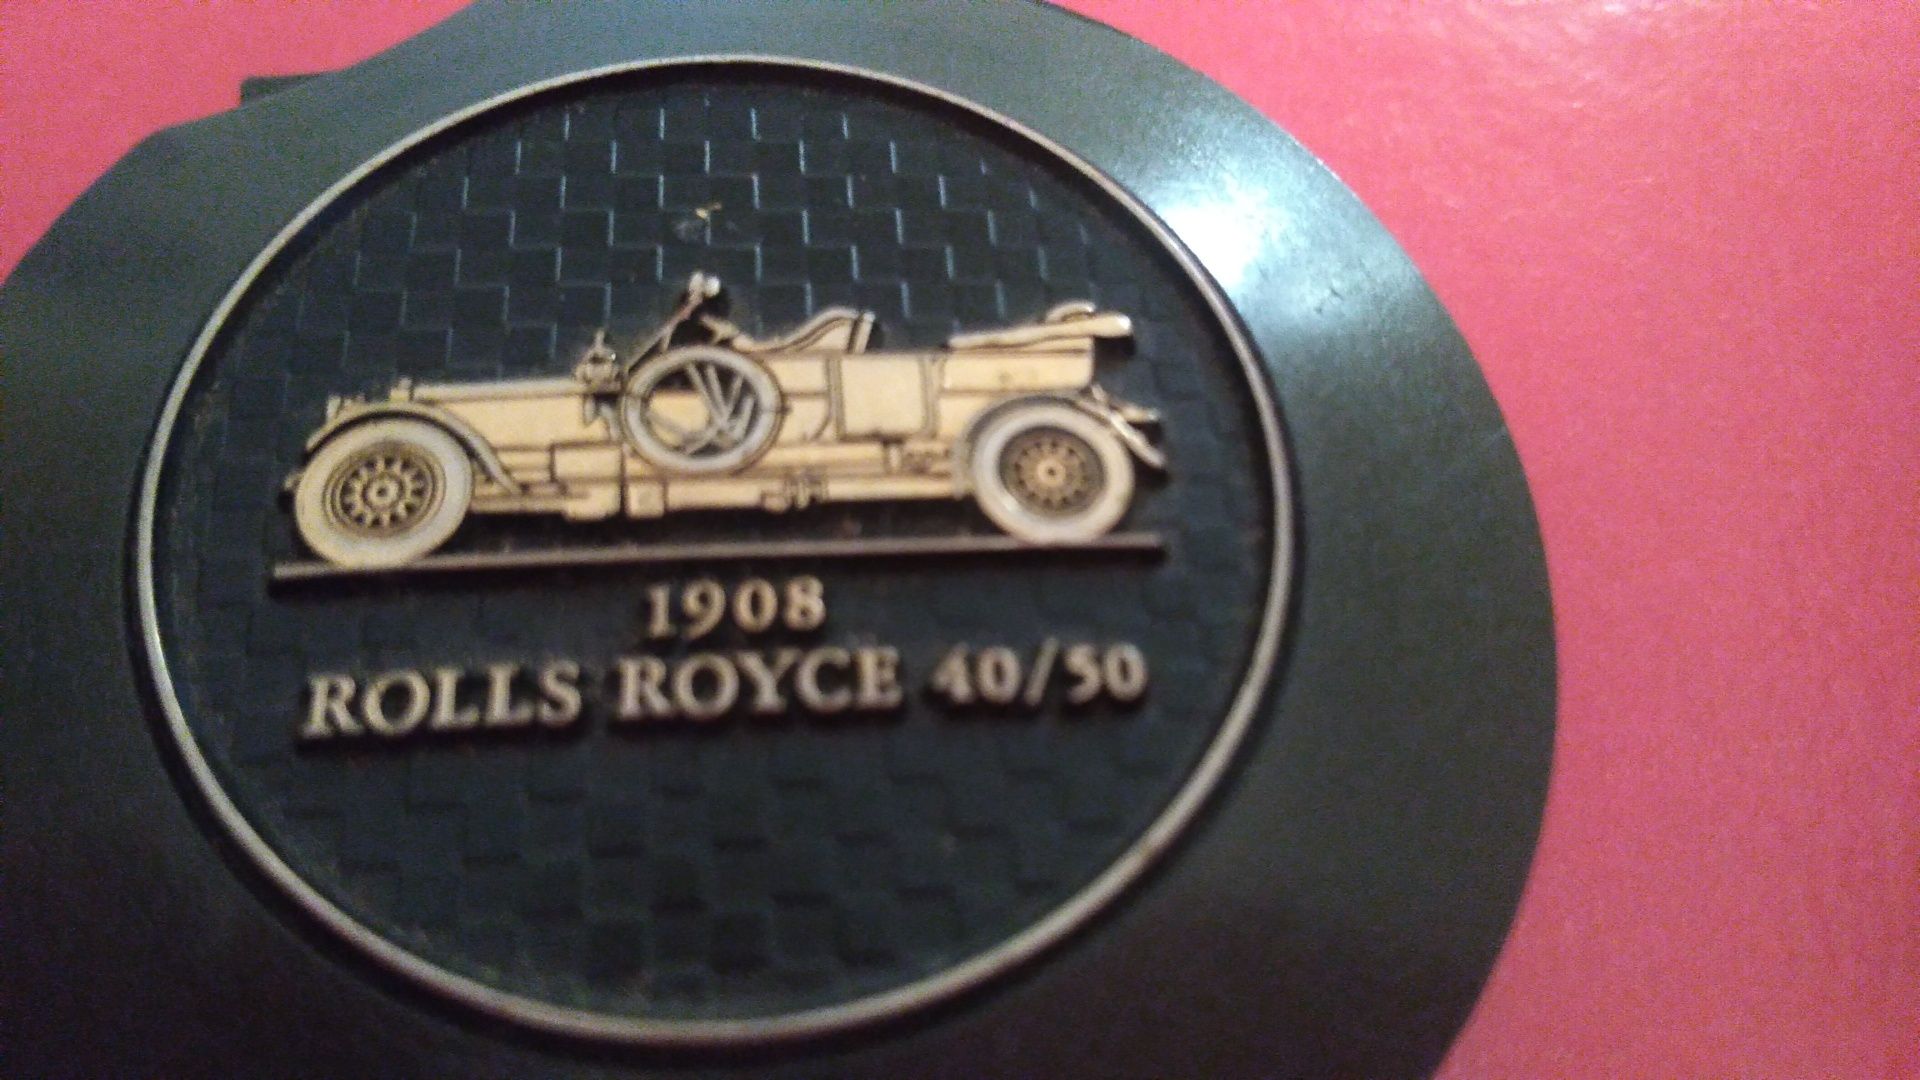 Raro isqueiro original tipo porta chaves da Rolls Royce